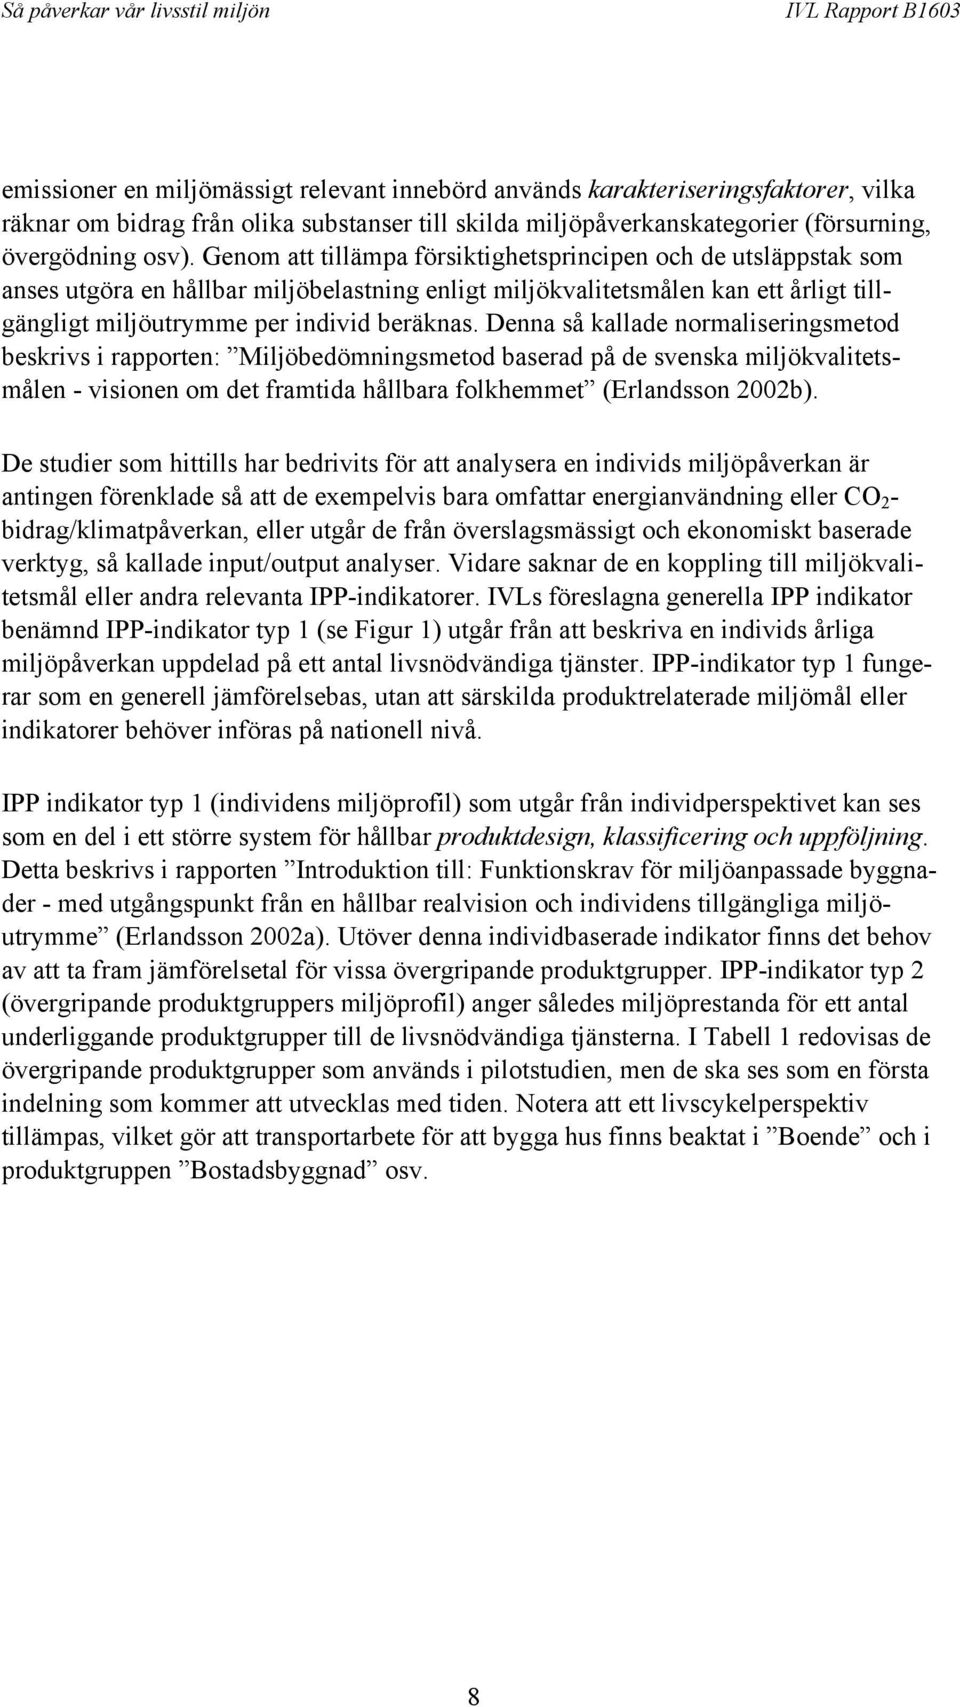 Denna så kallade normaliseringsmetod beskrivs i rapporten: Miljöbedömningsmetod baserad på de svenska miljökvalitetsmålen - visionen om det framtida hållbara folkhemmet (Erlandsson 2002b).